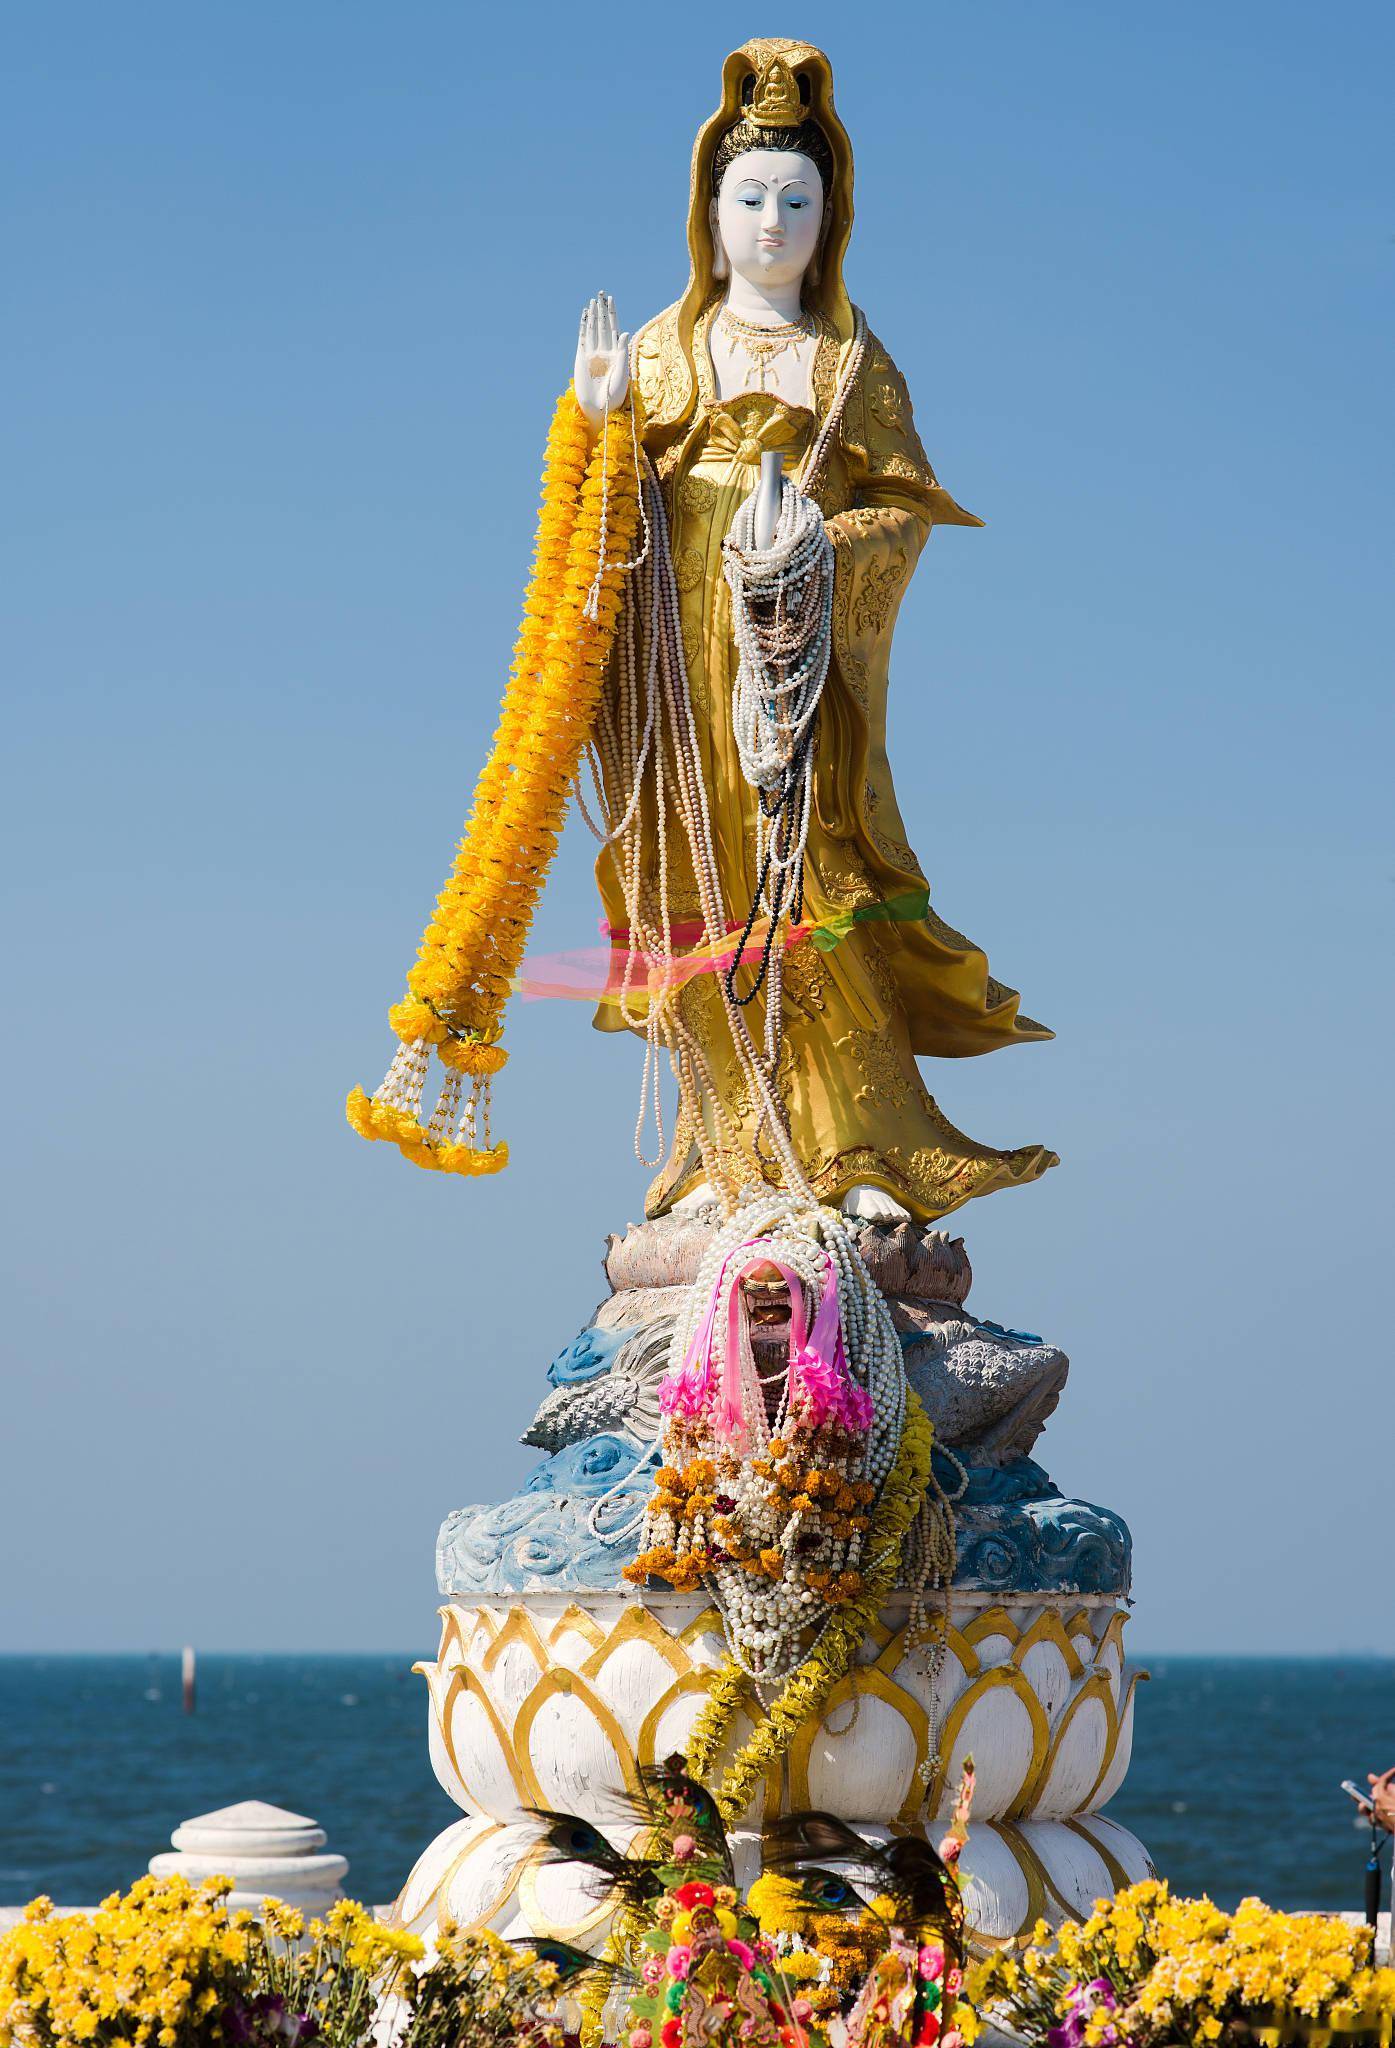 【携程攻略】舟山33米高南海观音景点,南海观音像是普陀山的标志,也是普陀山上最大的一尊佛像.给人震撼的感…